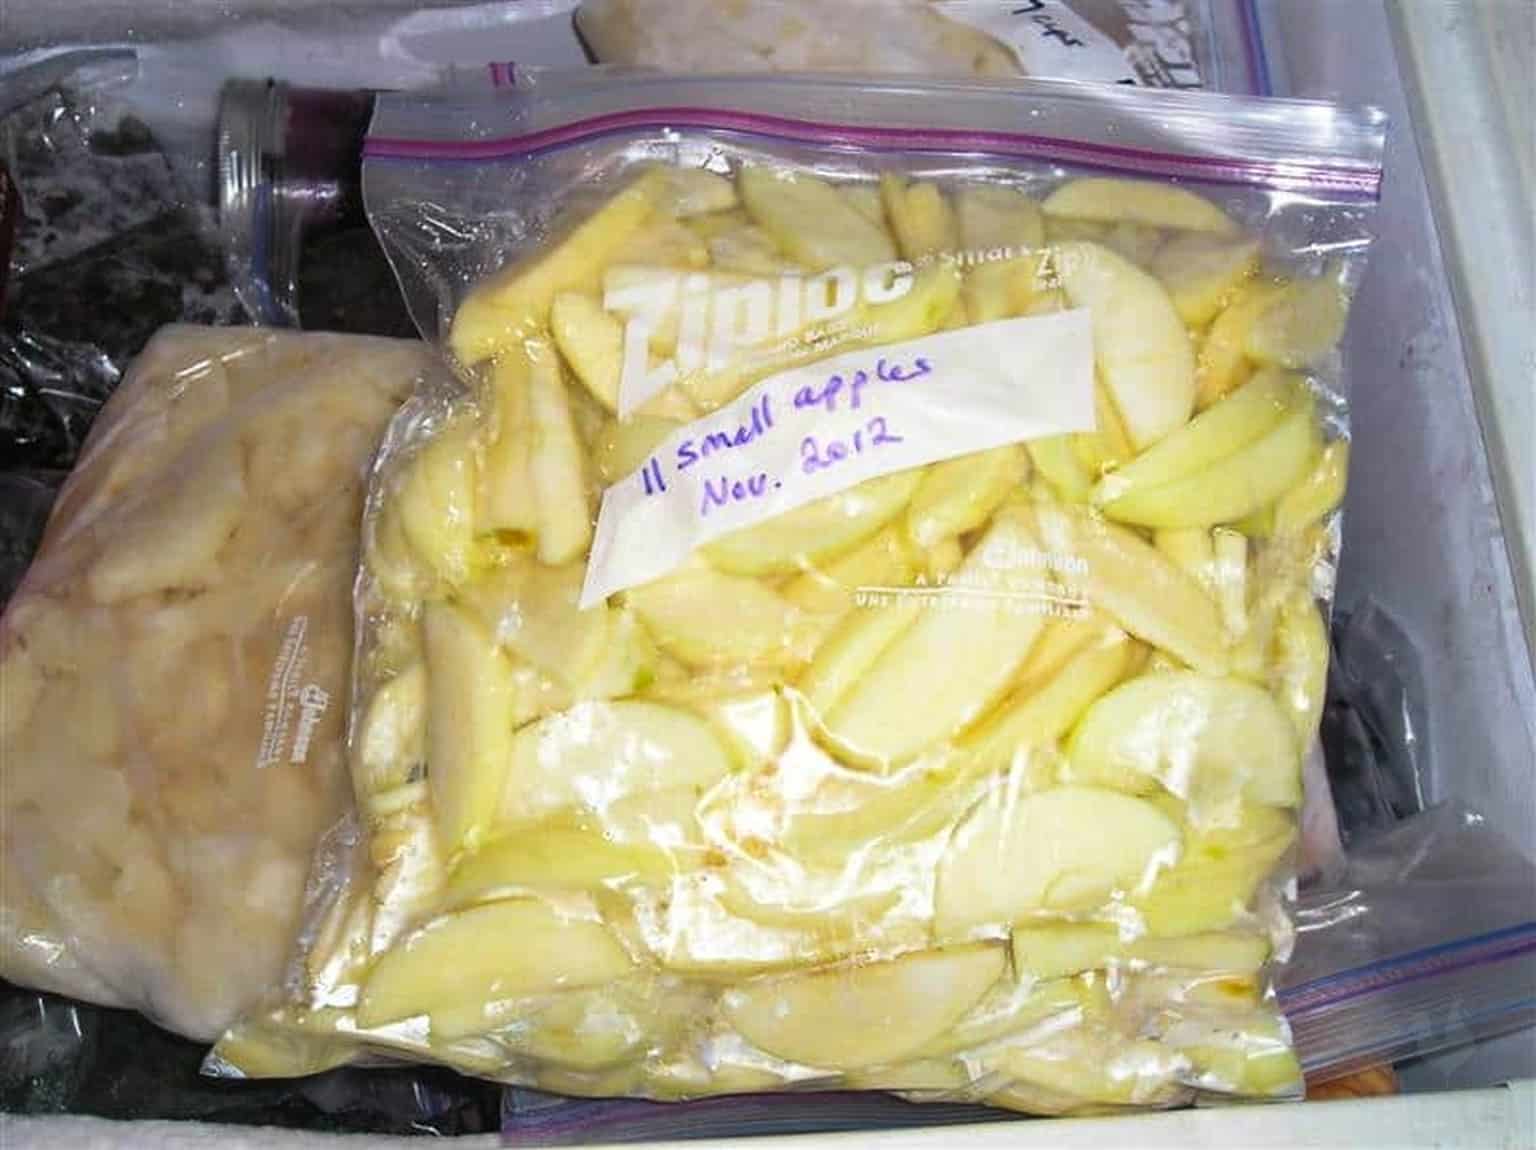 frozen apple slices in Ziploc bag